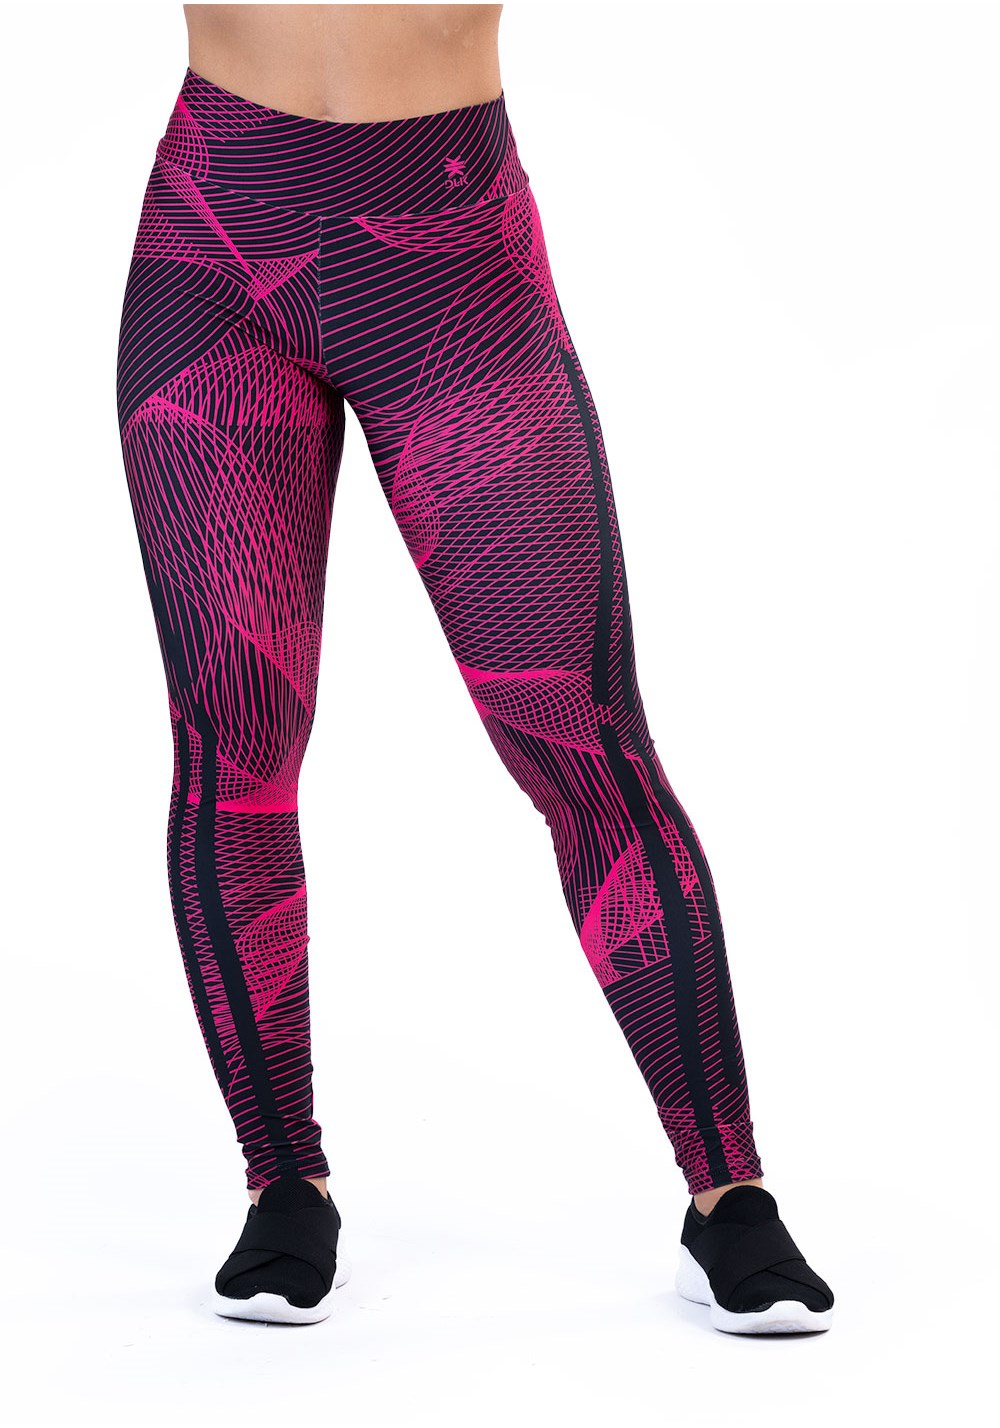 Legging fitness feminina new printed estampada gradil pink